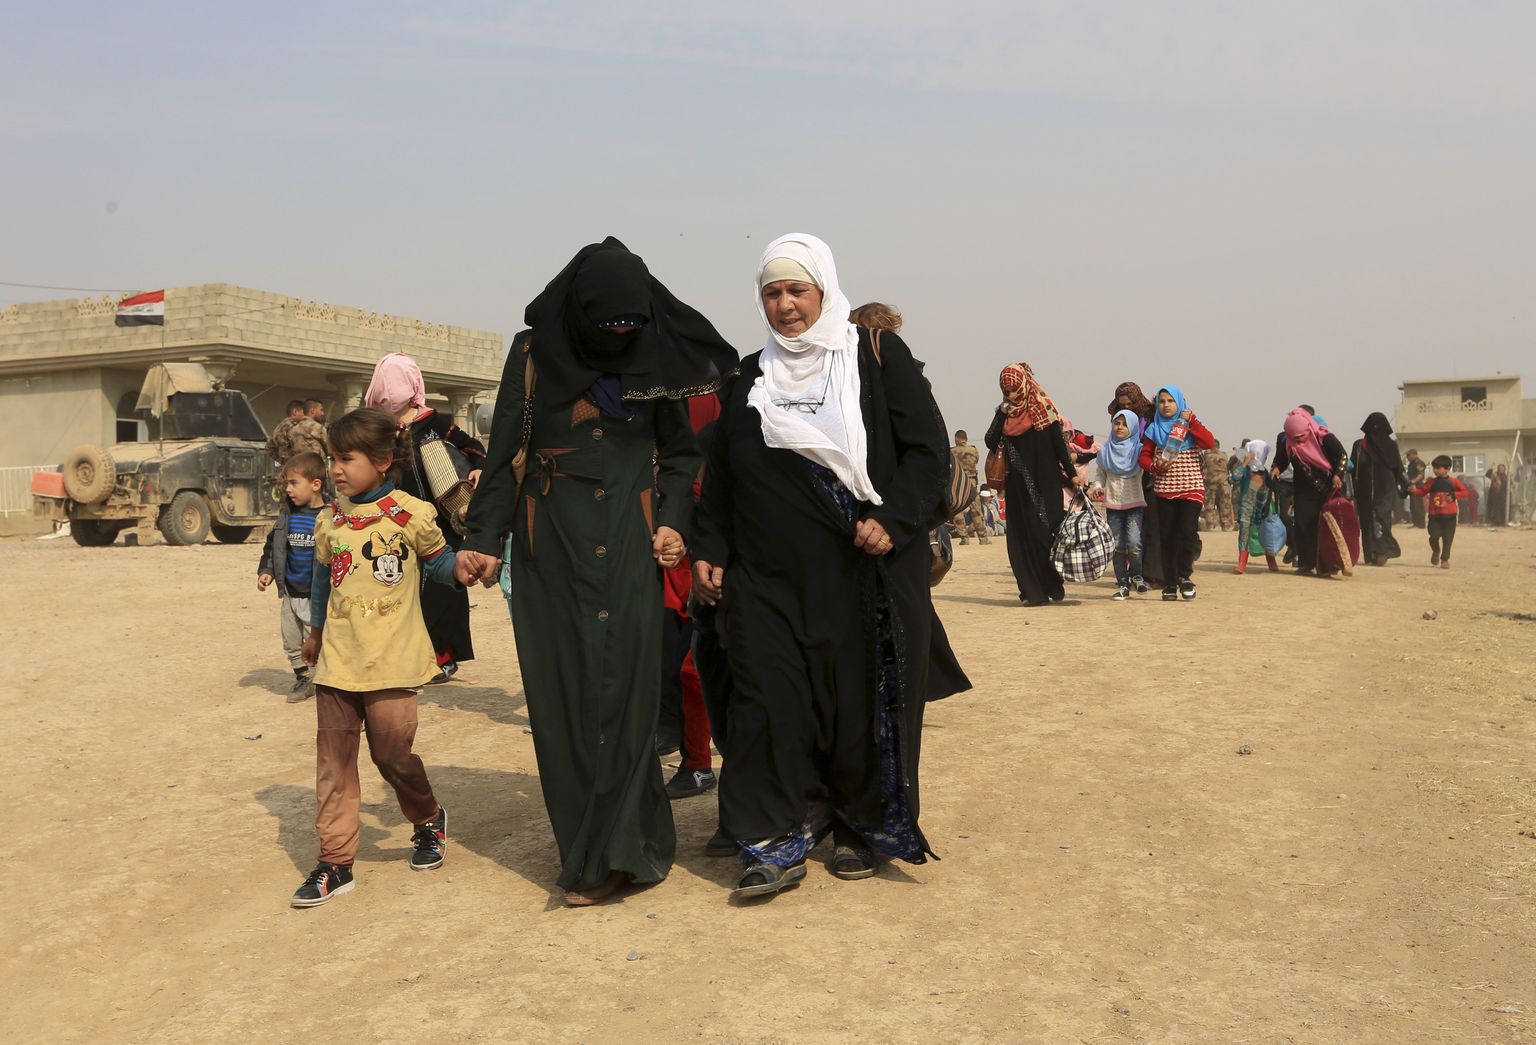 Tsiviilisikud lahkuvad oma kodudest Mosuli ümbruses.